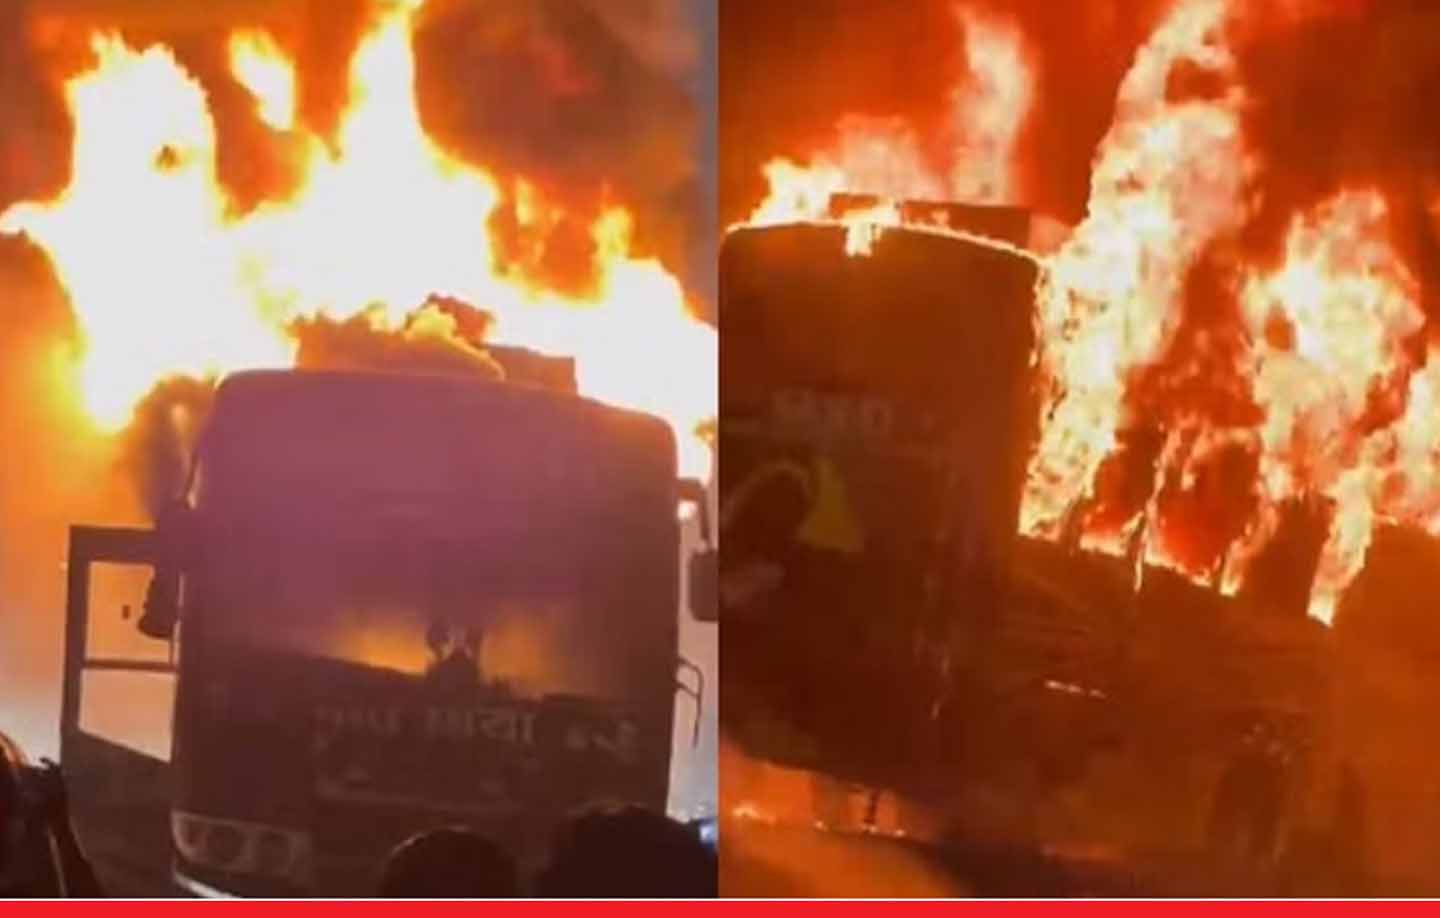 दिल्ली-जयपुर हाईवे पर हादसा: प्राइवेट स्लीपर बस में लगी आग, 2 यात्री जिंदा जले, 12 झुलसे